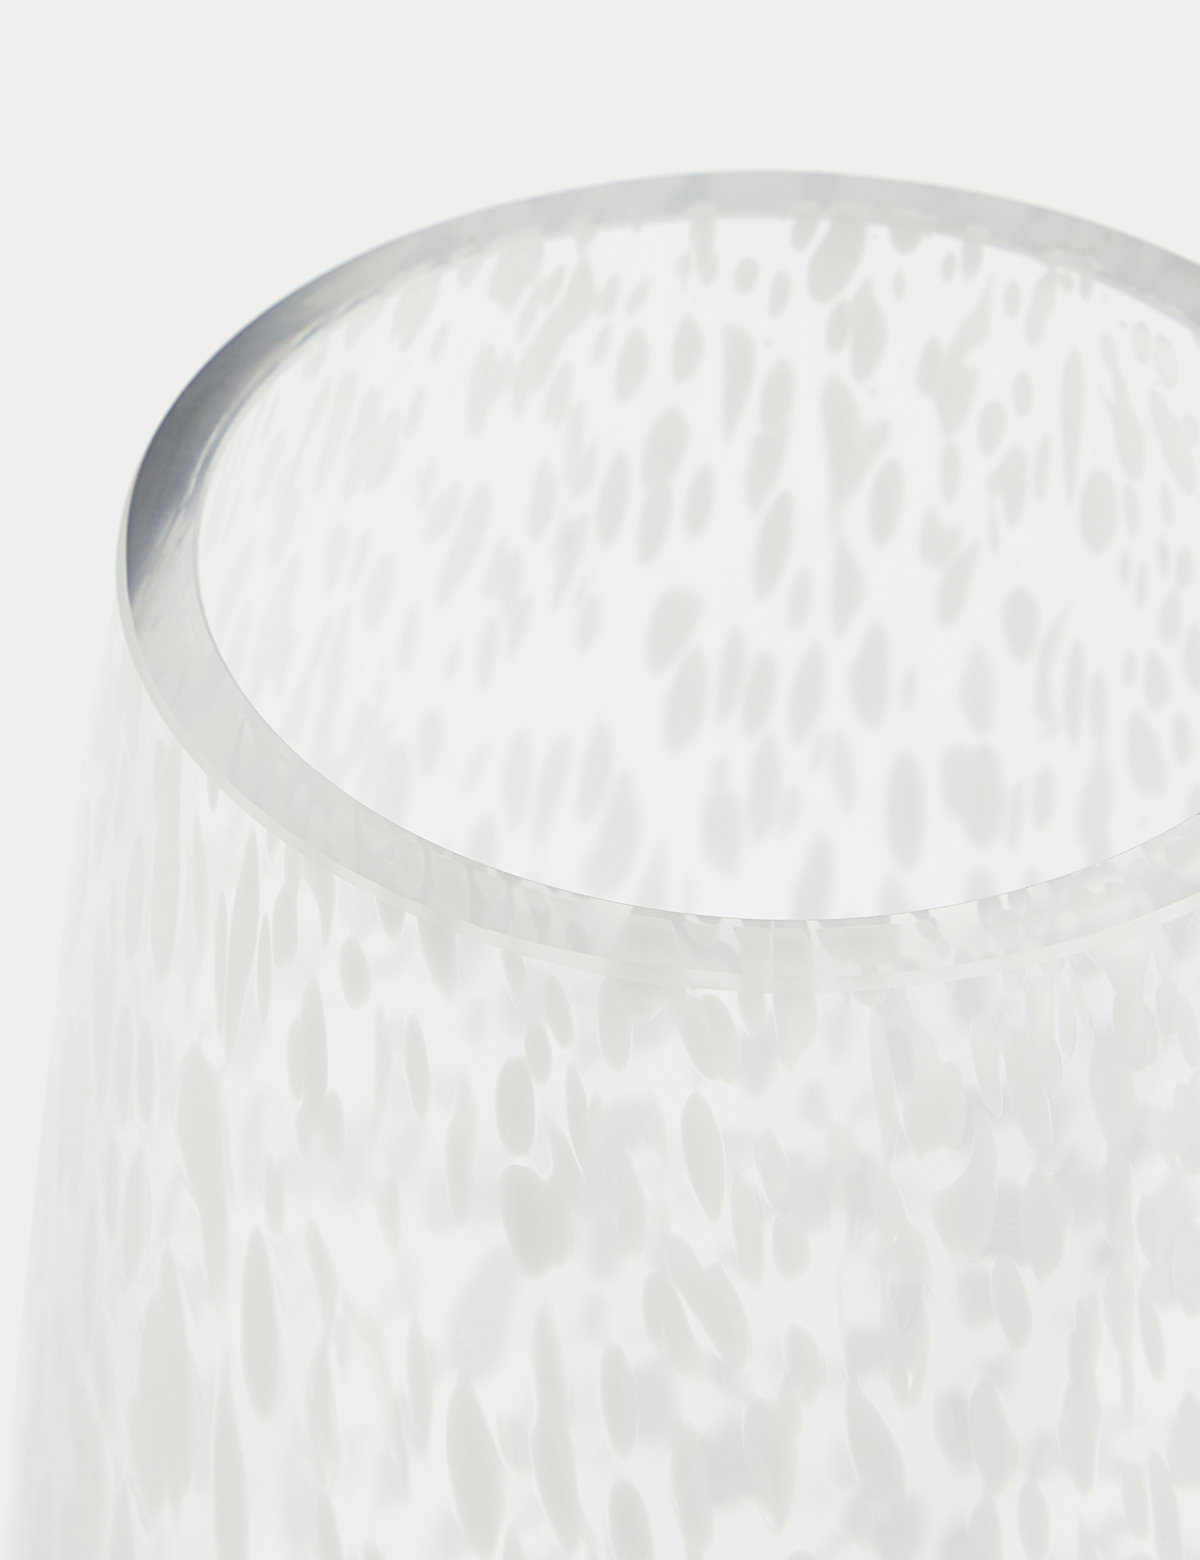 Confetti Glass Vase